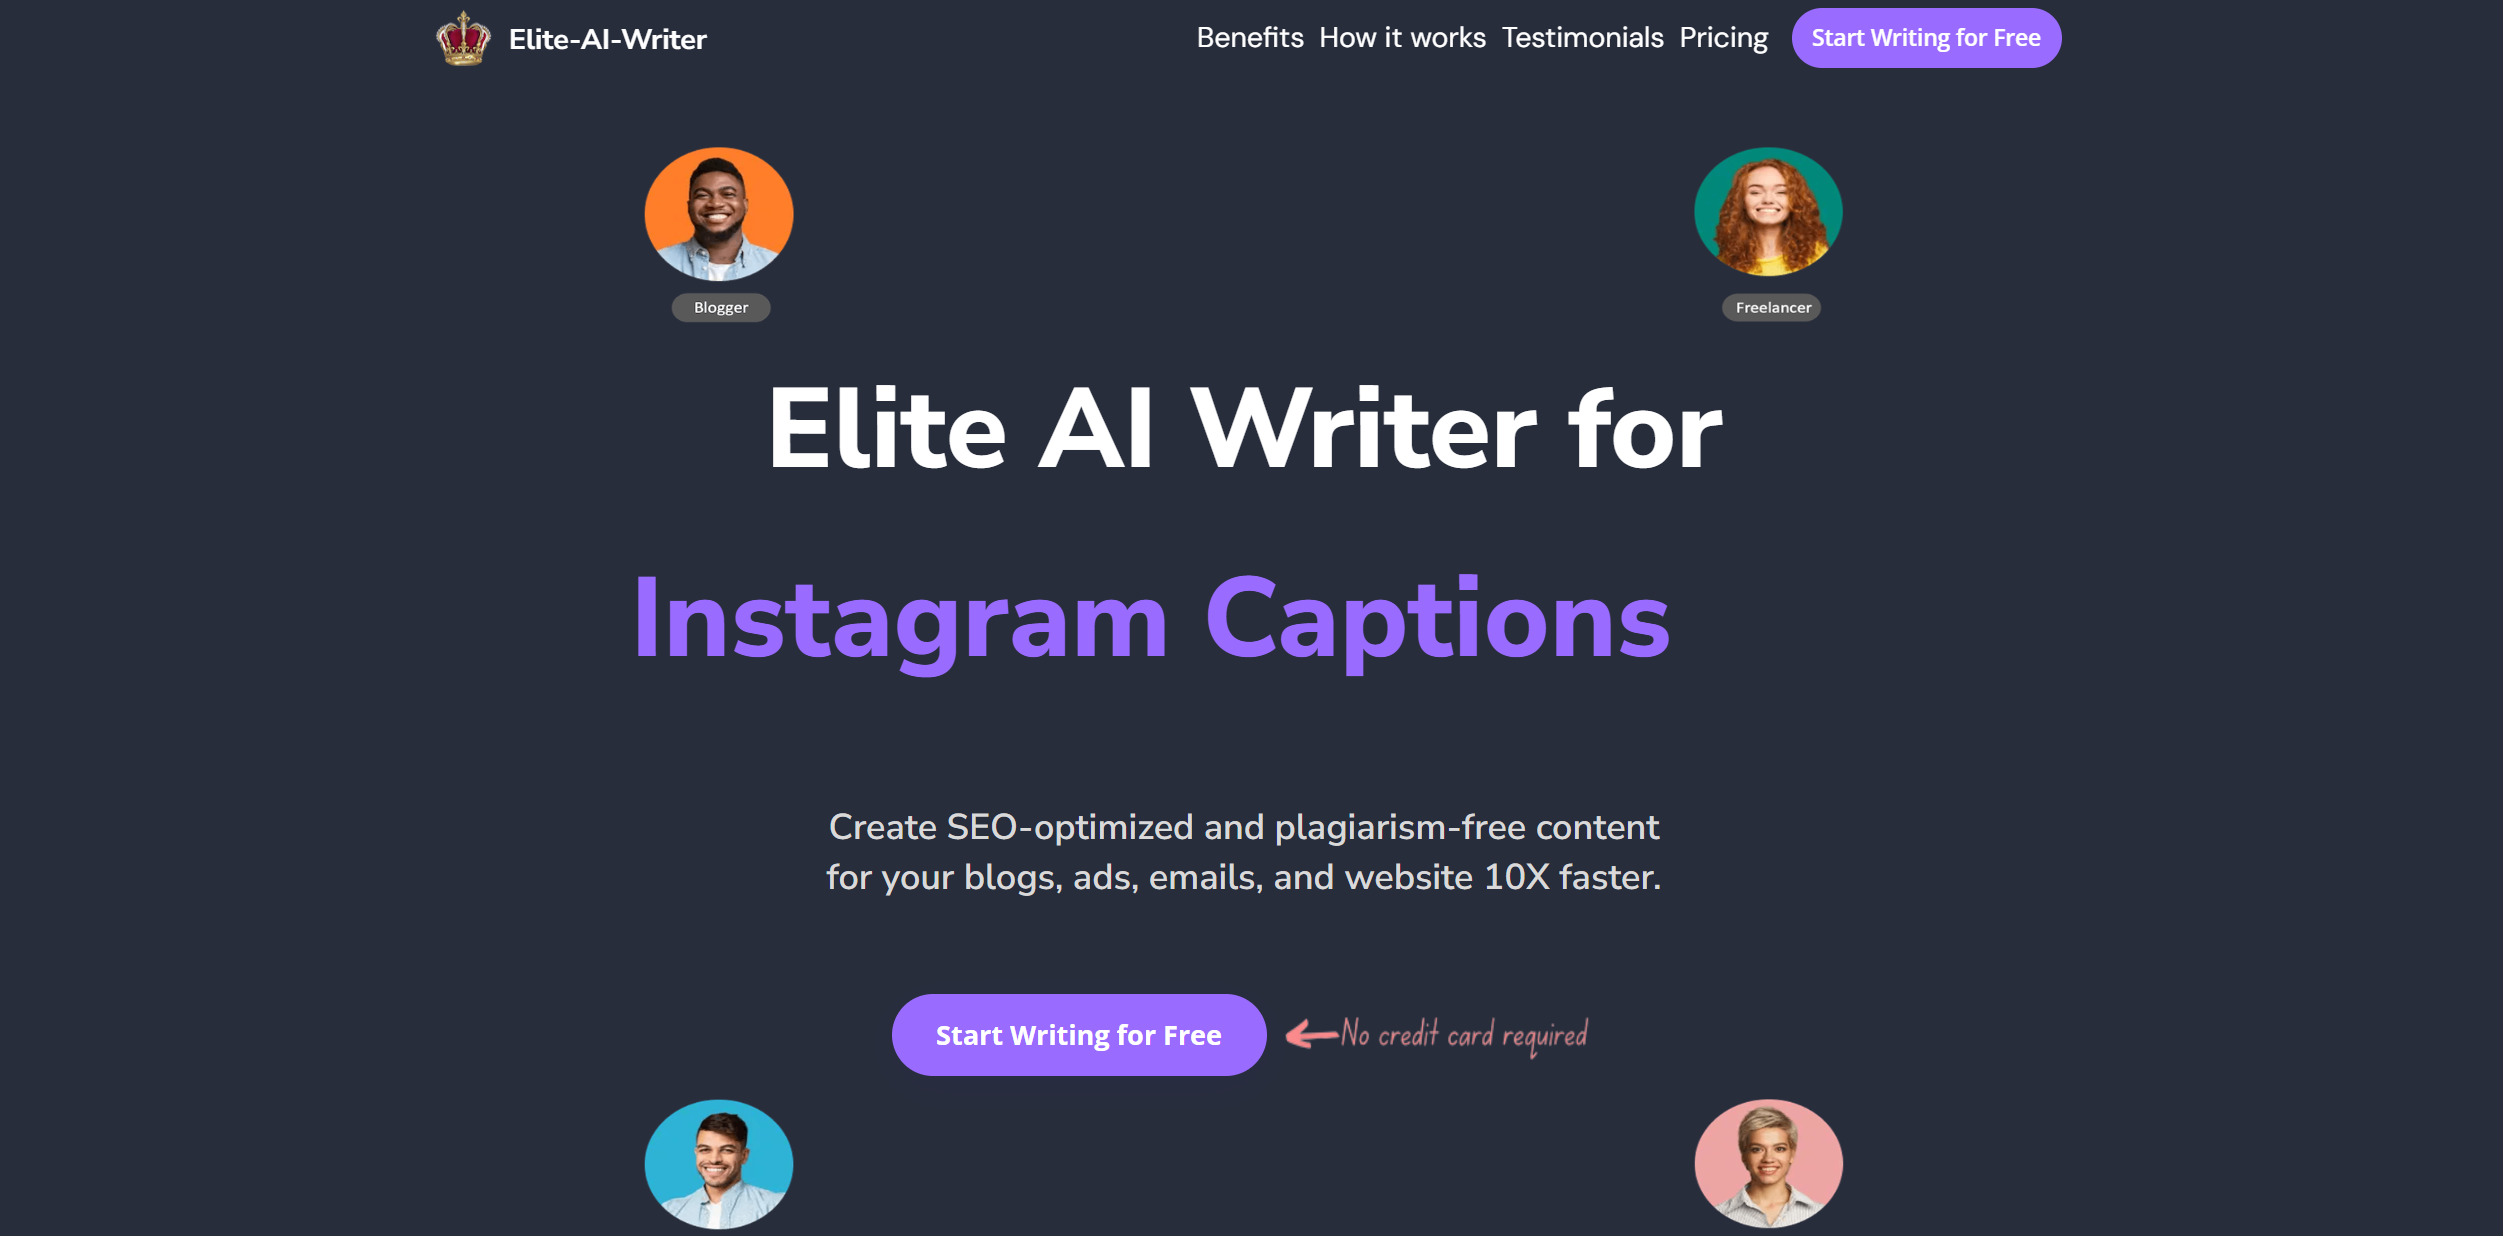 Elite-AI-Escrever